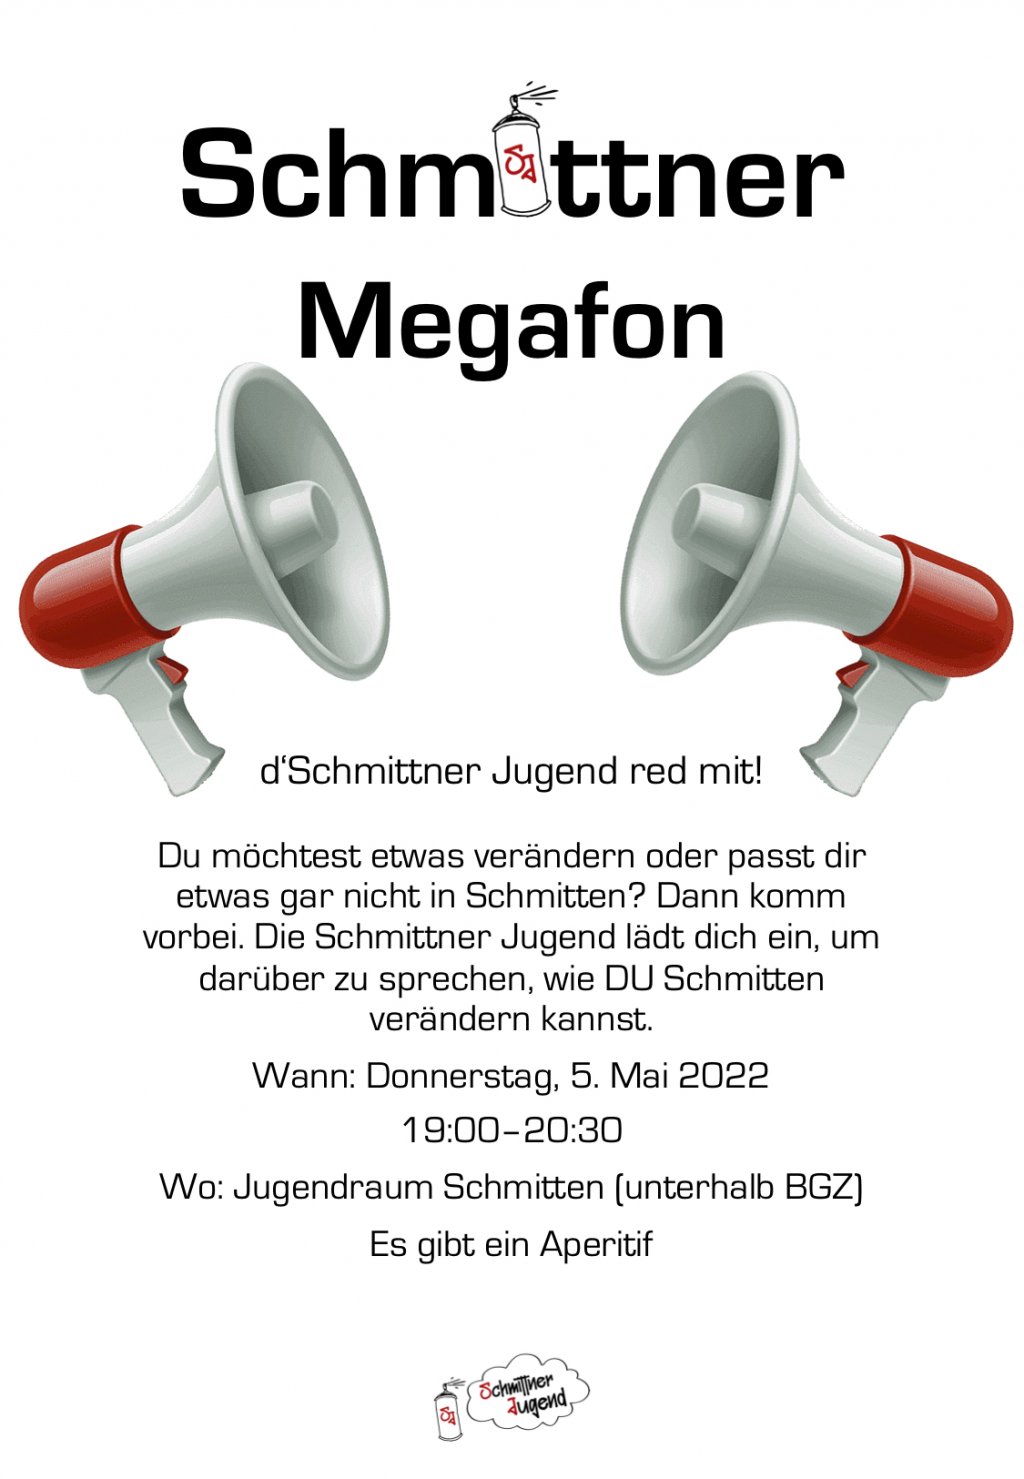 image-11714165-Schmittner_Megafon-c20ad.w640.jpg